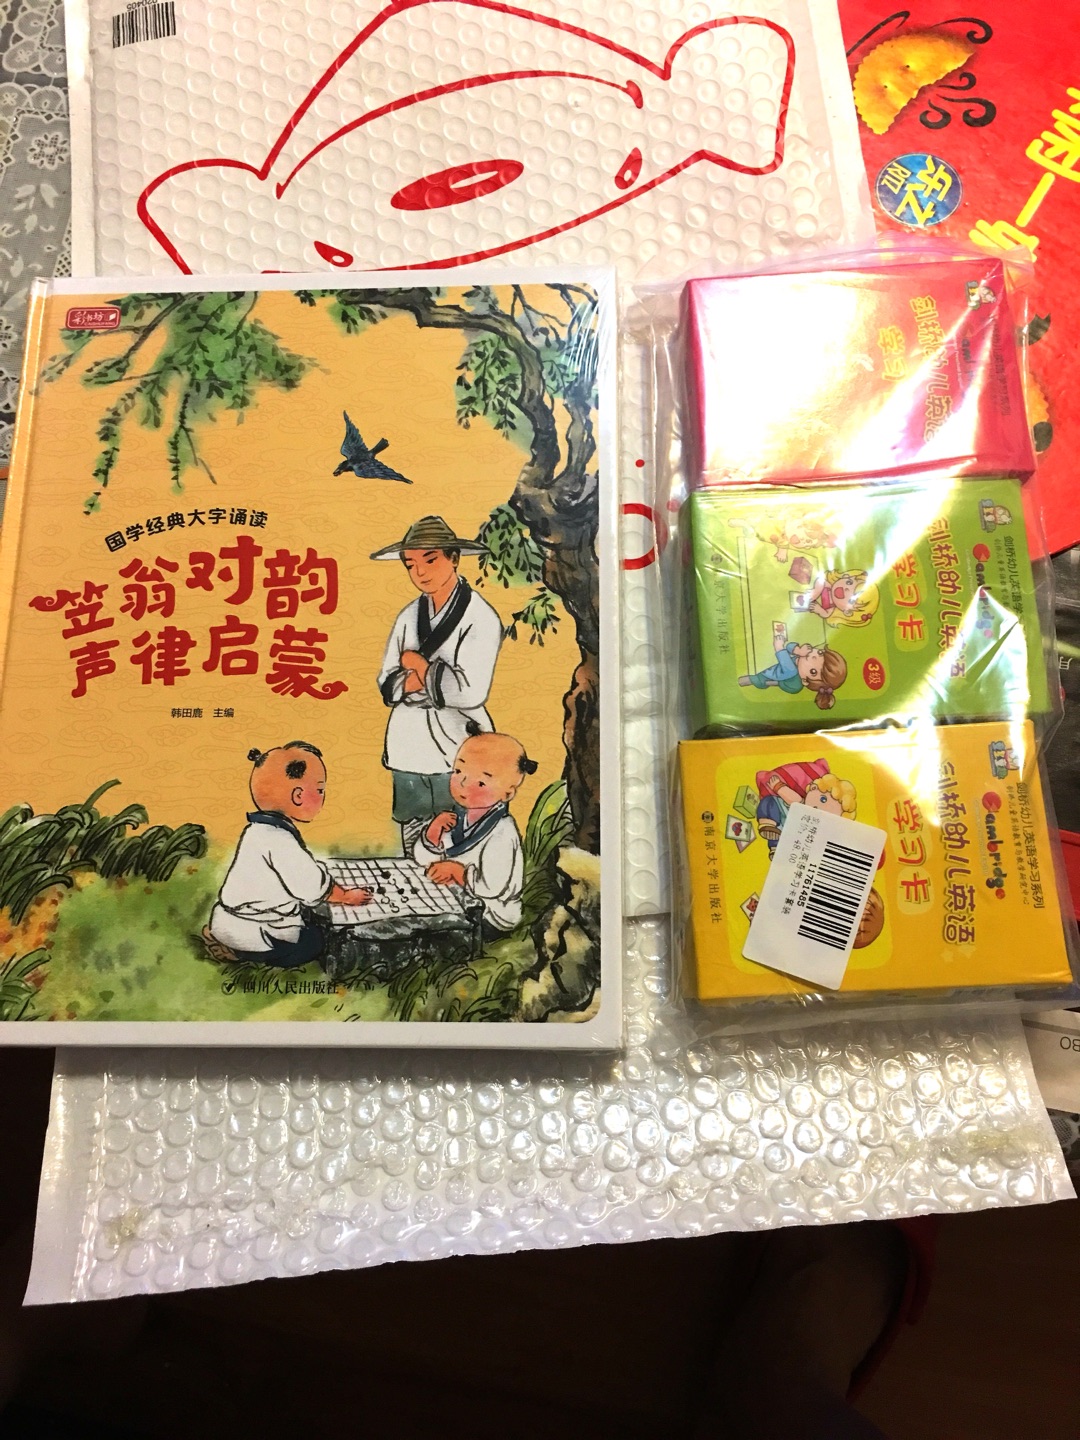 这本书挺不错的比那个高大上的版本好。既有精彩的图文，又有很有实用意义的汉语拼音。孩子很喜欢?